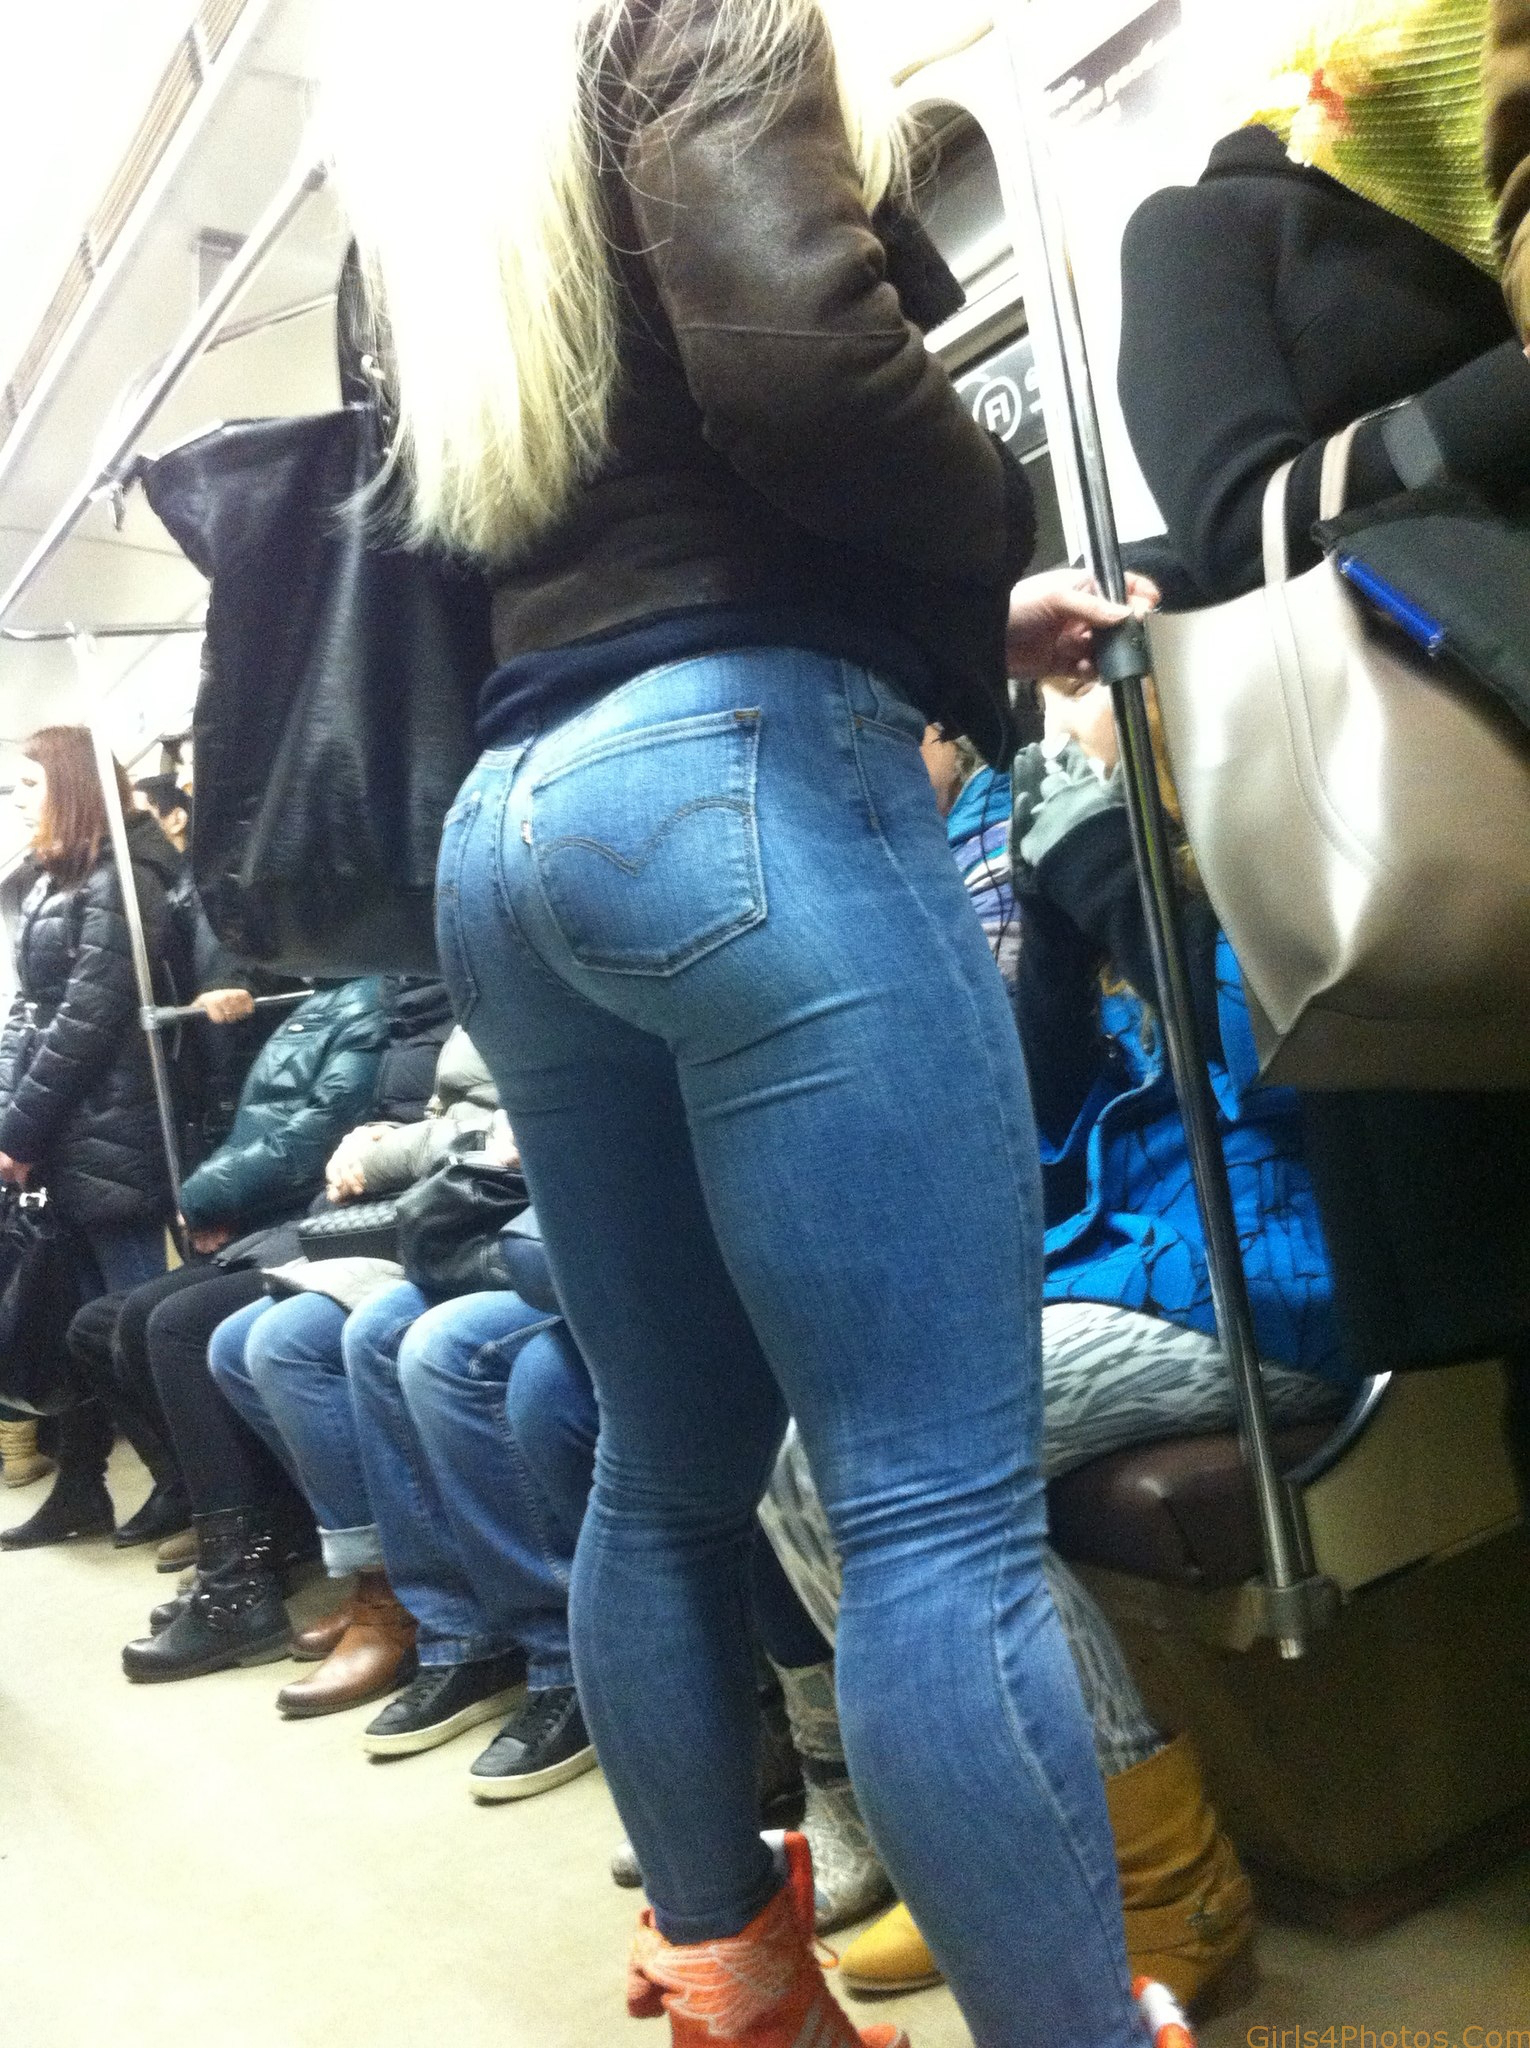 Студентка в джинсах оголила красивую грудь на улице